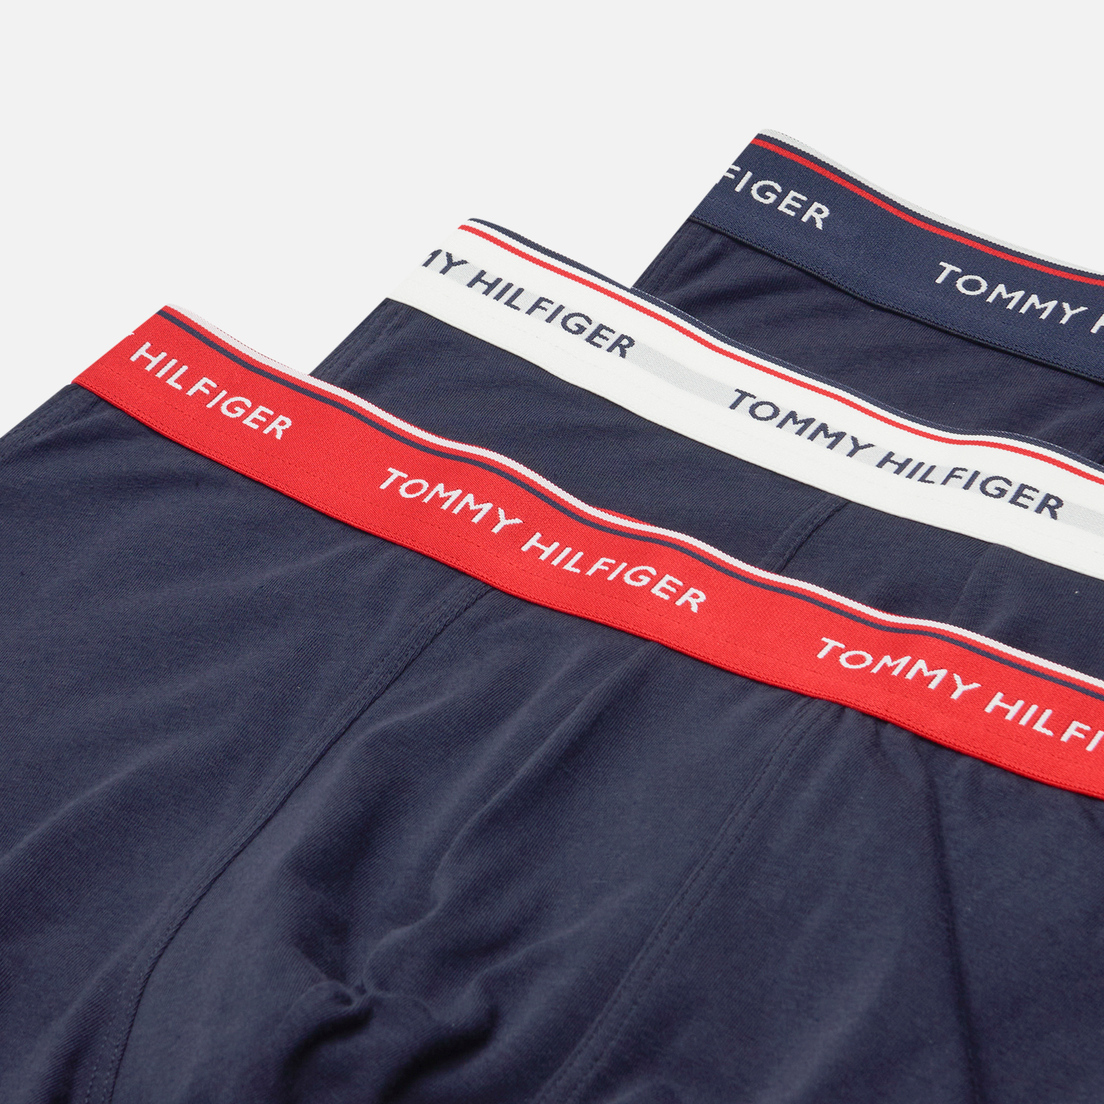 Tommy Hilfiger Underwear Комплект мужских трусов 3-Pack Premium Essential Trunks